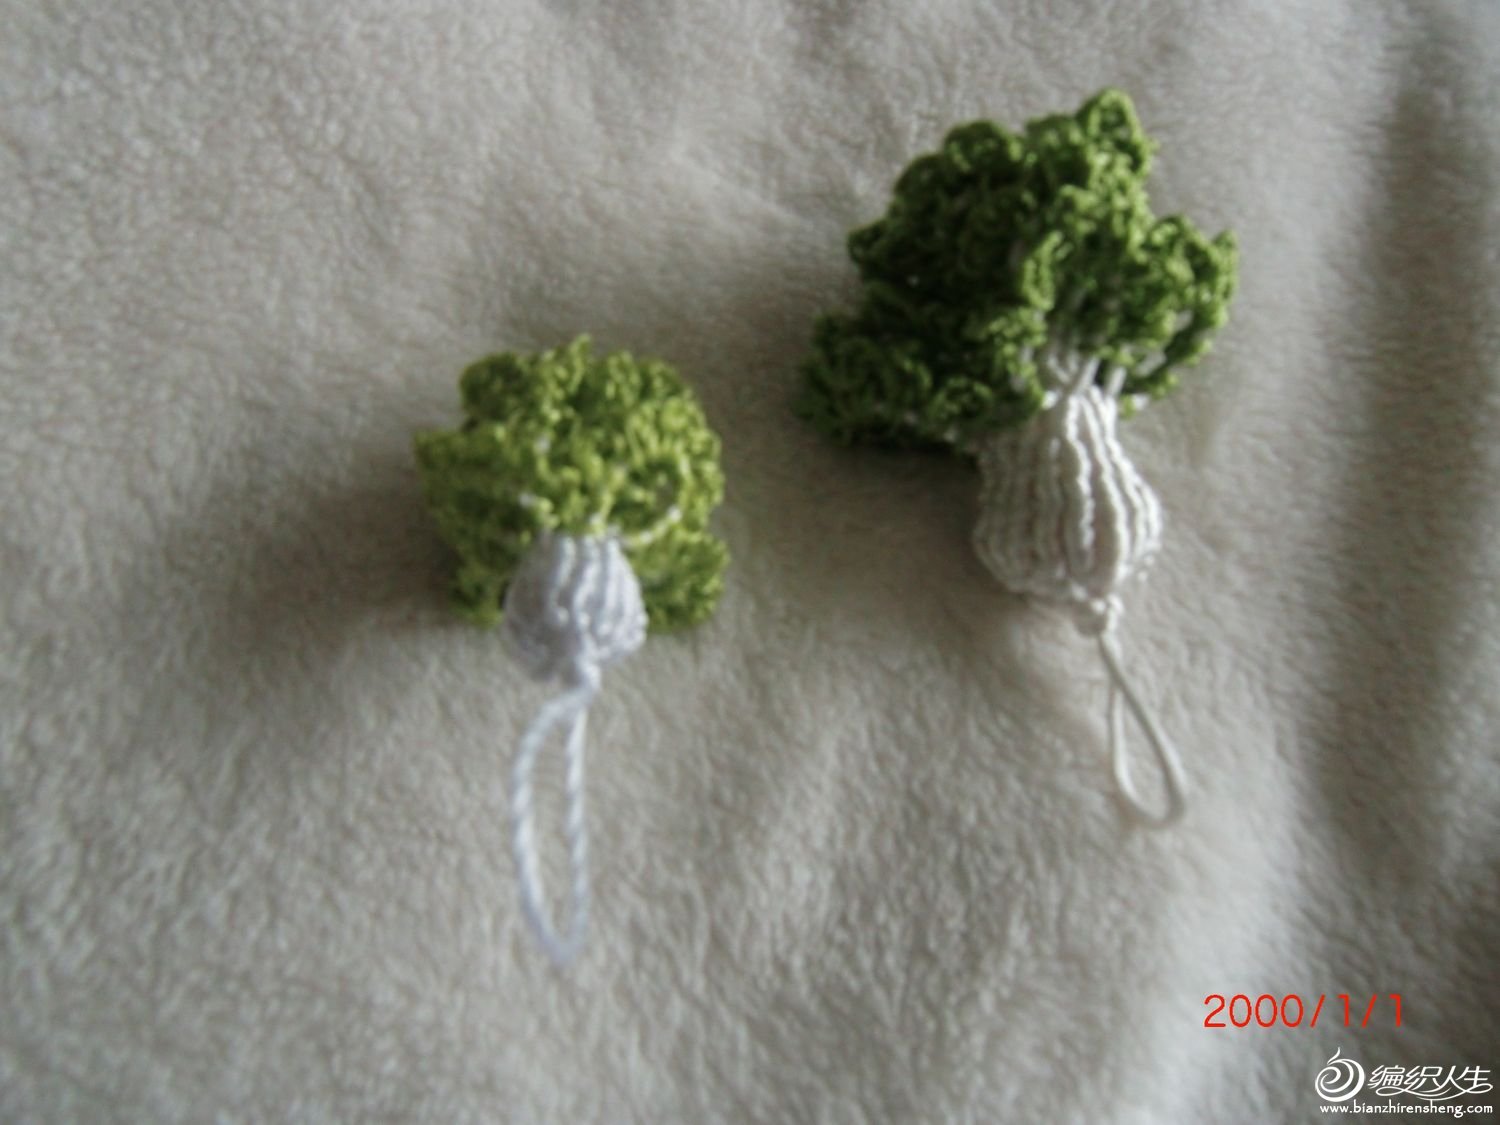 白菜发卡钩针编织教程 - 哔哩哔哩